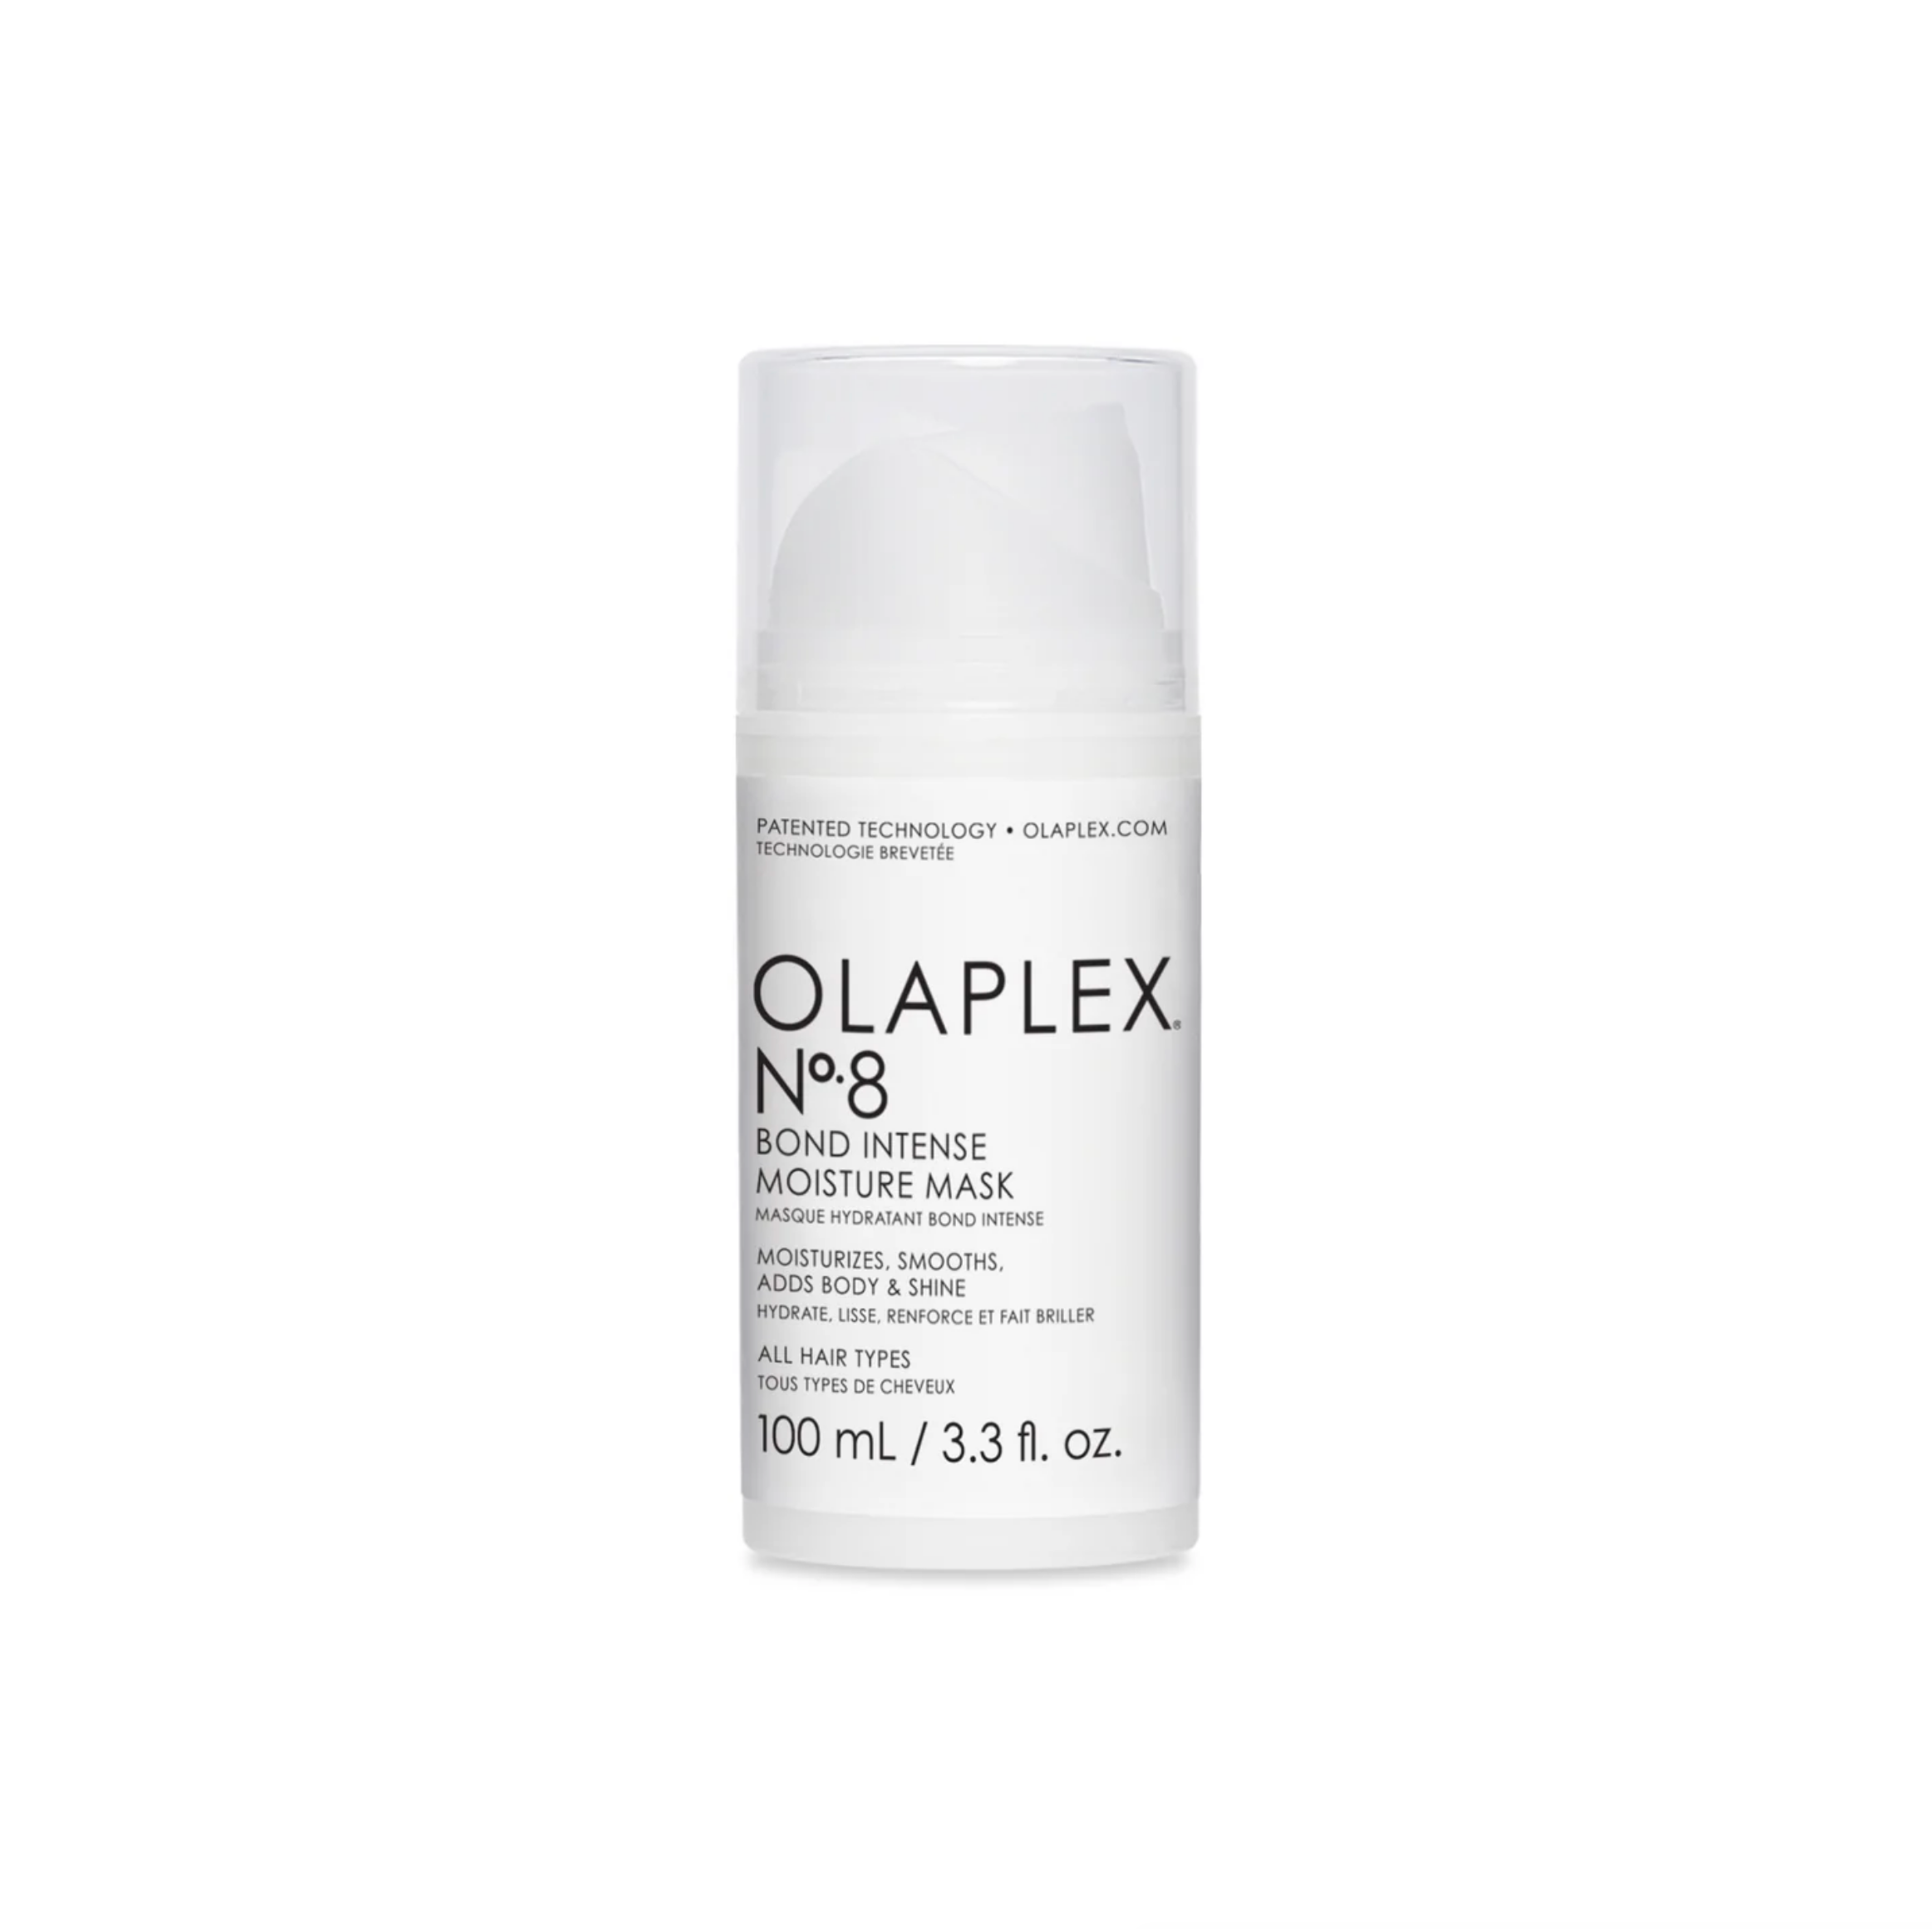 Masque hydrate, lisse, renforce et fait briller Olaplex N°8 Bond intense moisture mask - Crème Salon